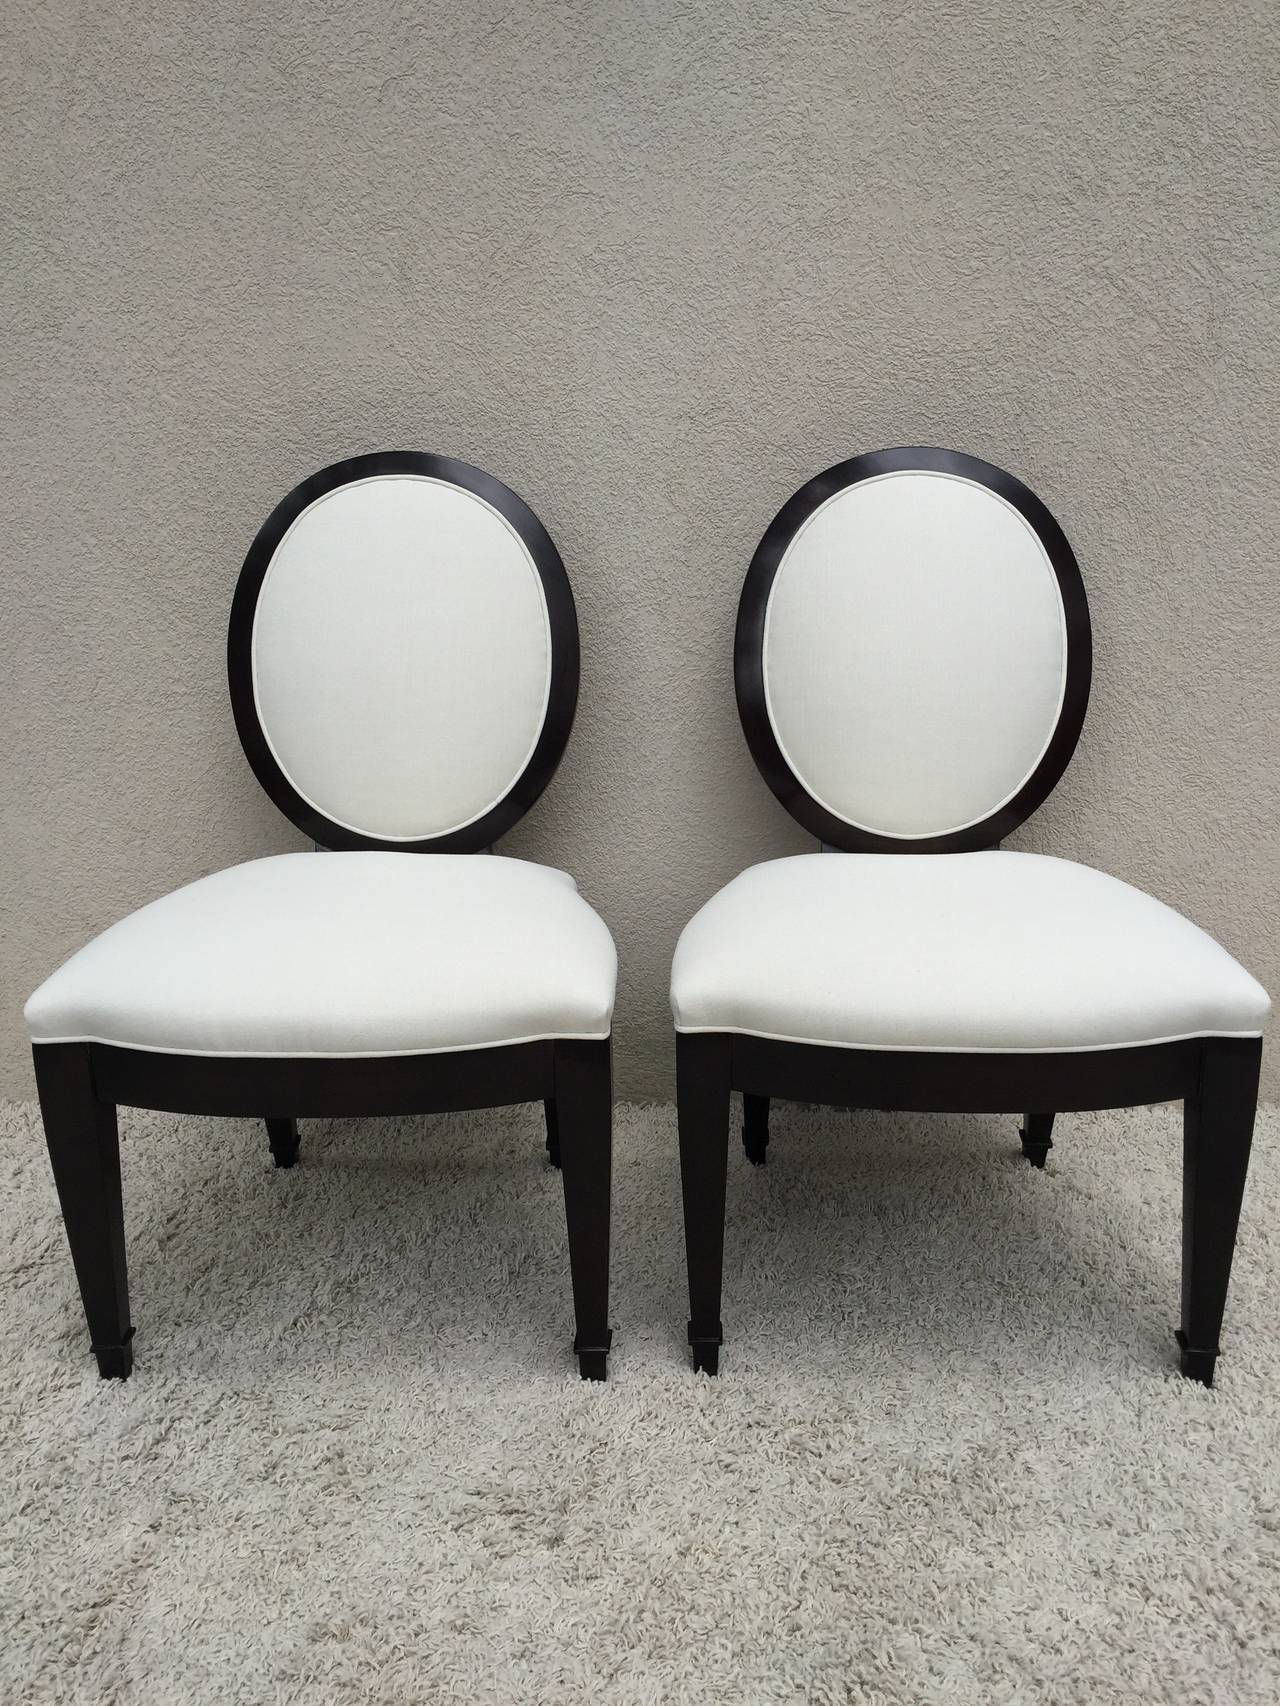 donghia chairs